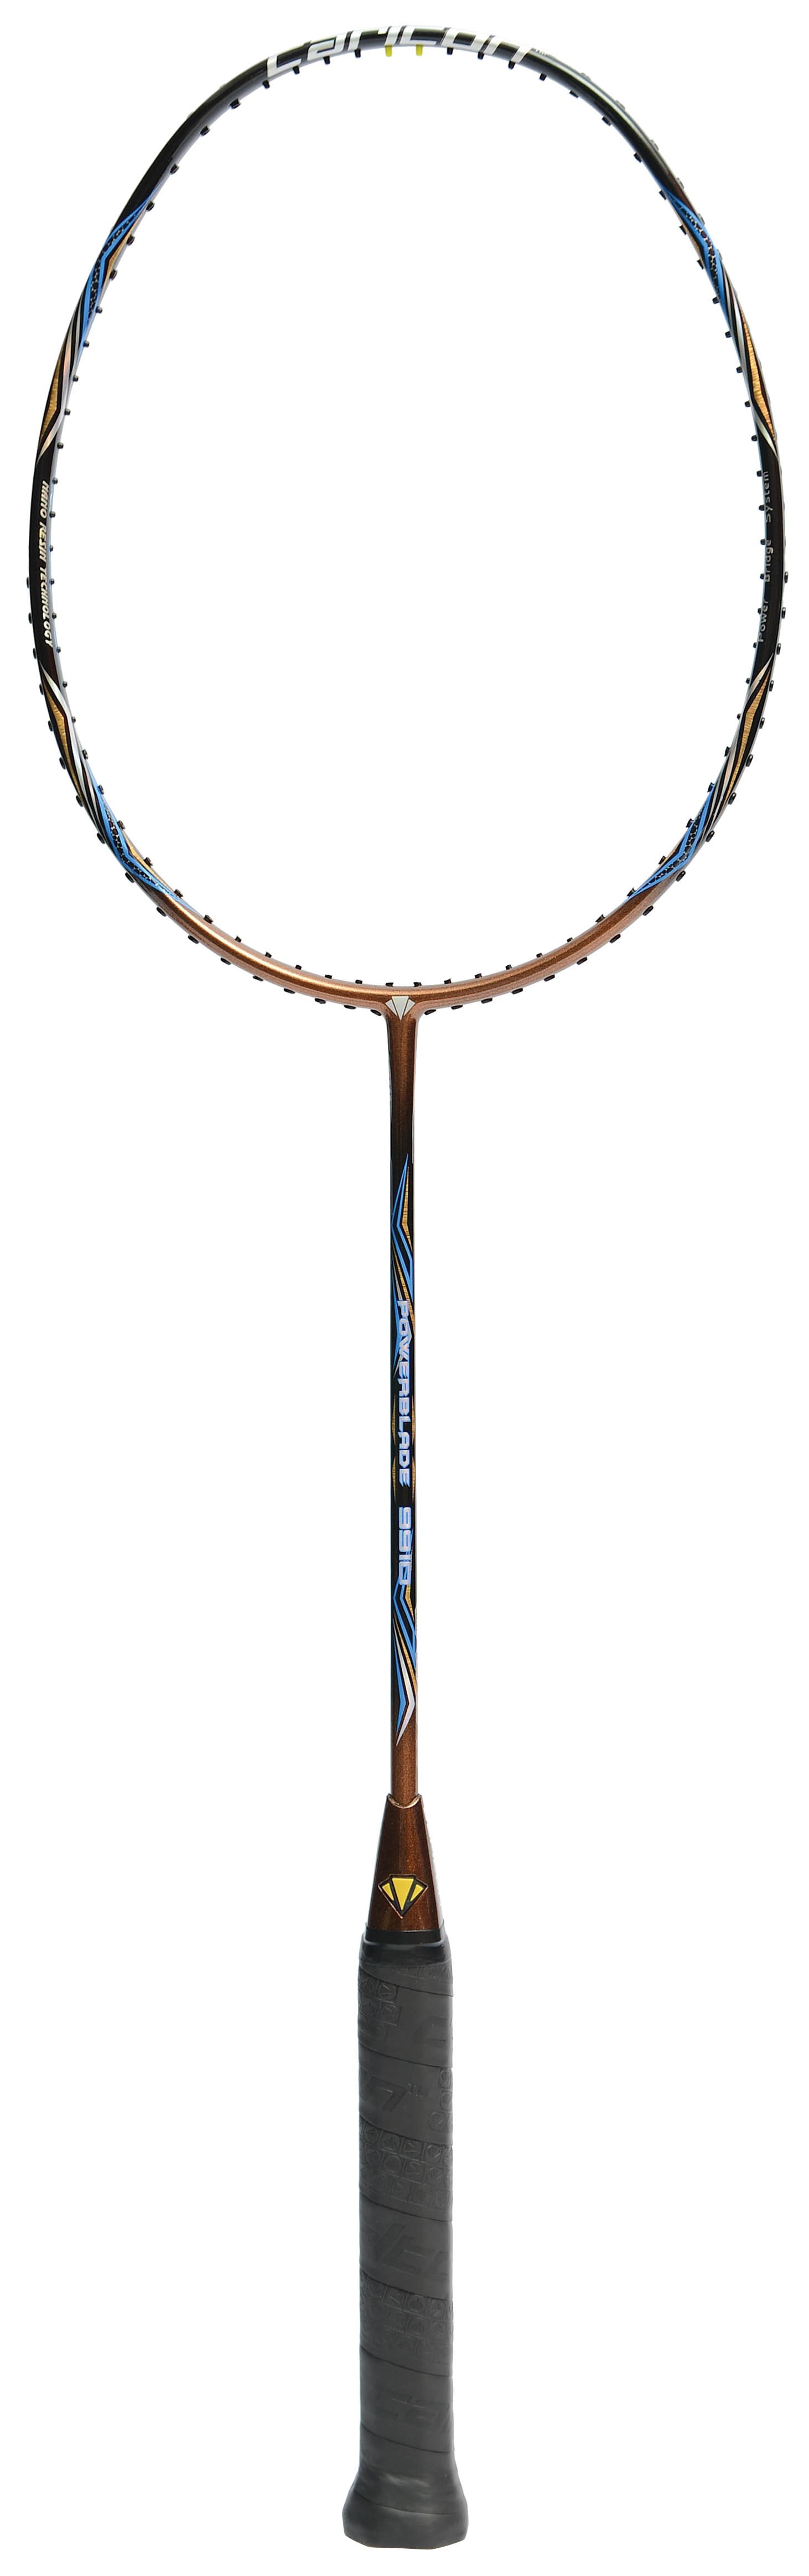 Badminton Raquette Carlton Powerblade Super-Lite bleu sans housse nouveau sans frais de port 